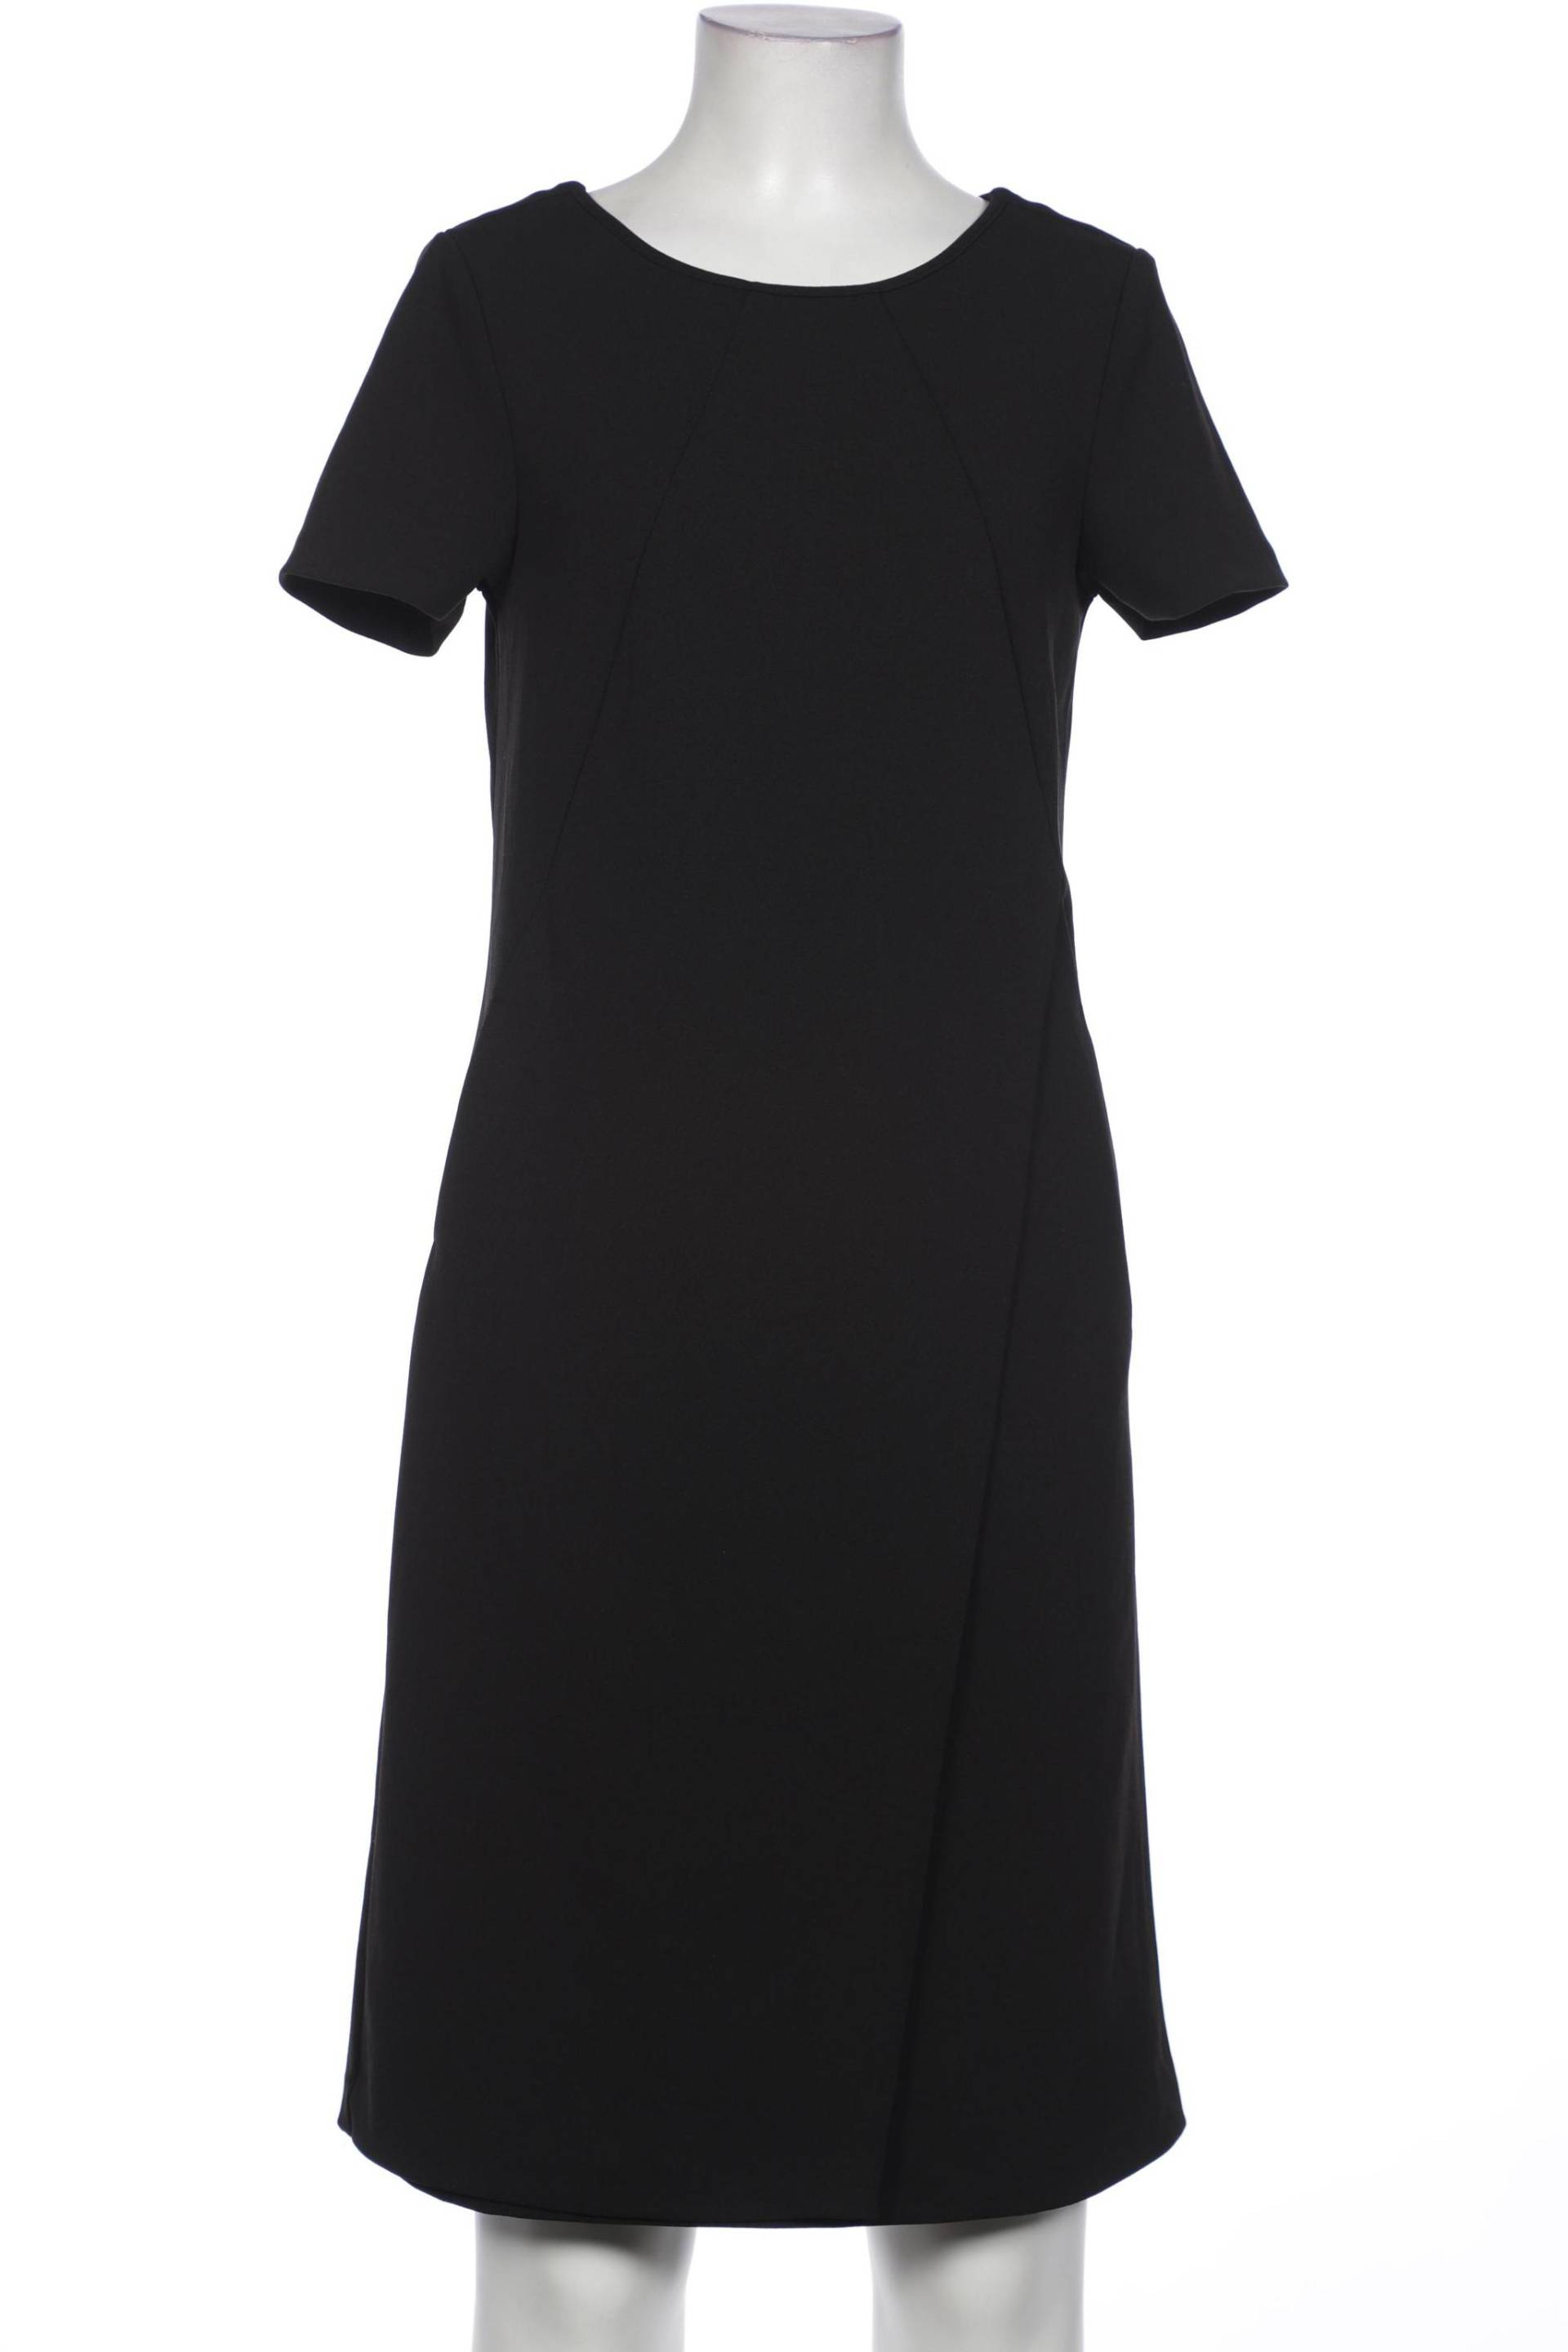 Qiero Damen Kleid, schwarz von Qiero